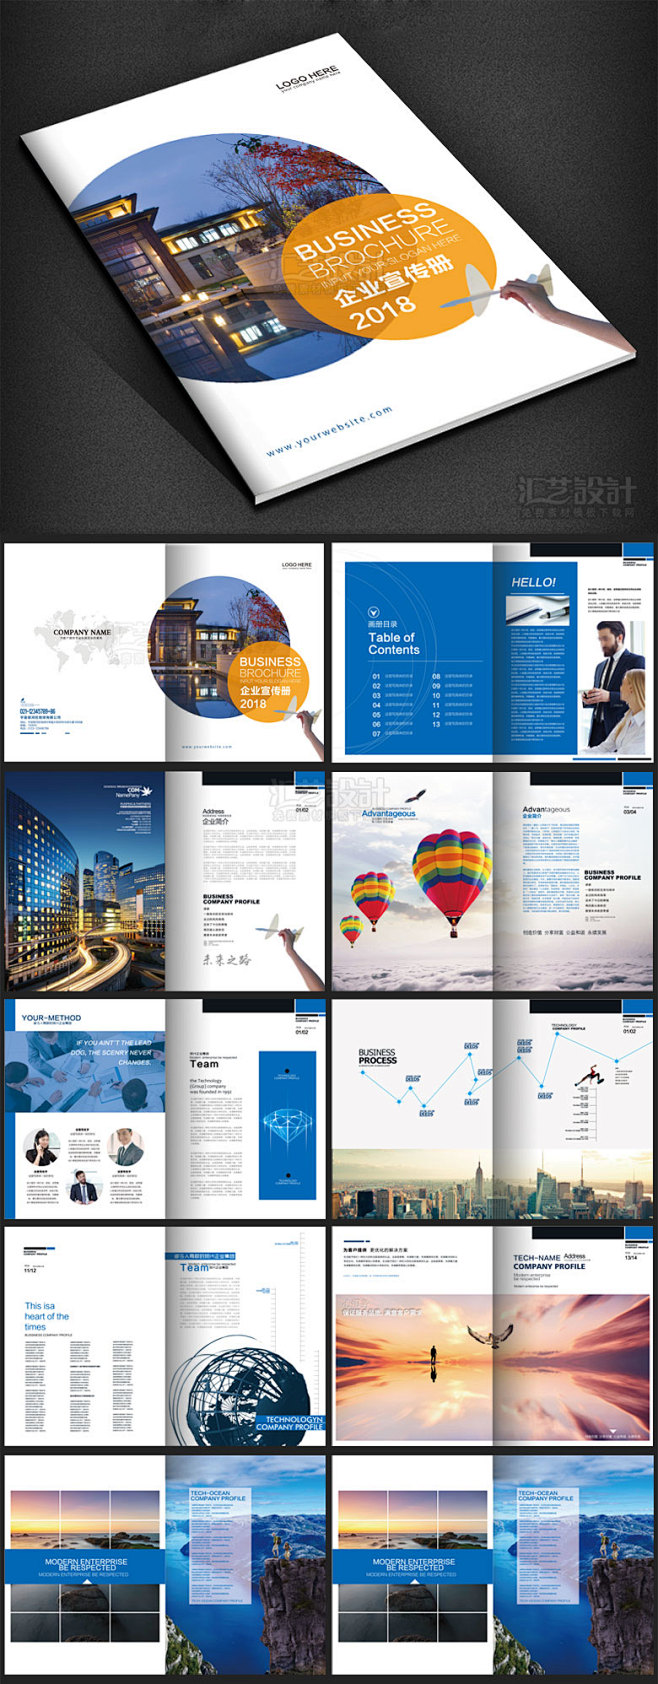 企业宣传册设计下载公司画册PSD模板